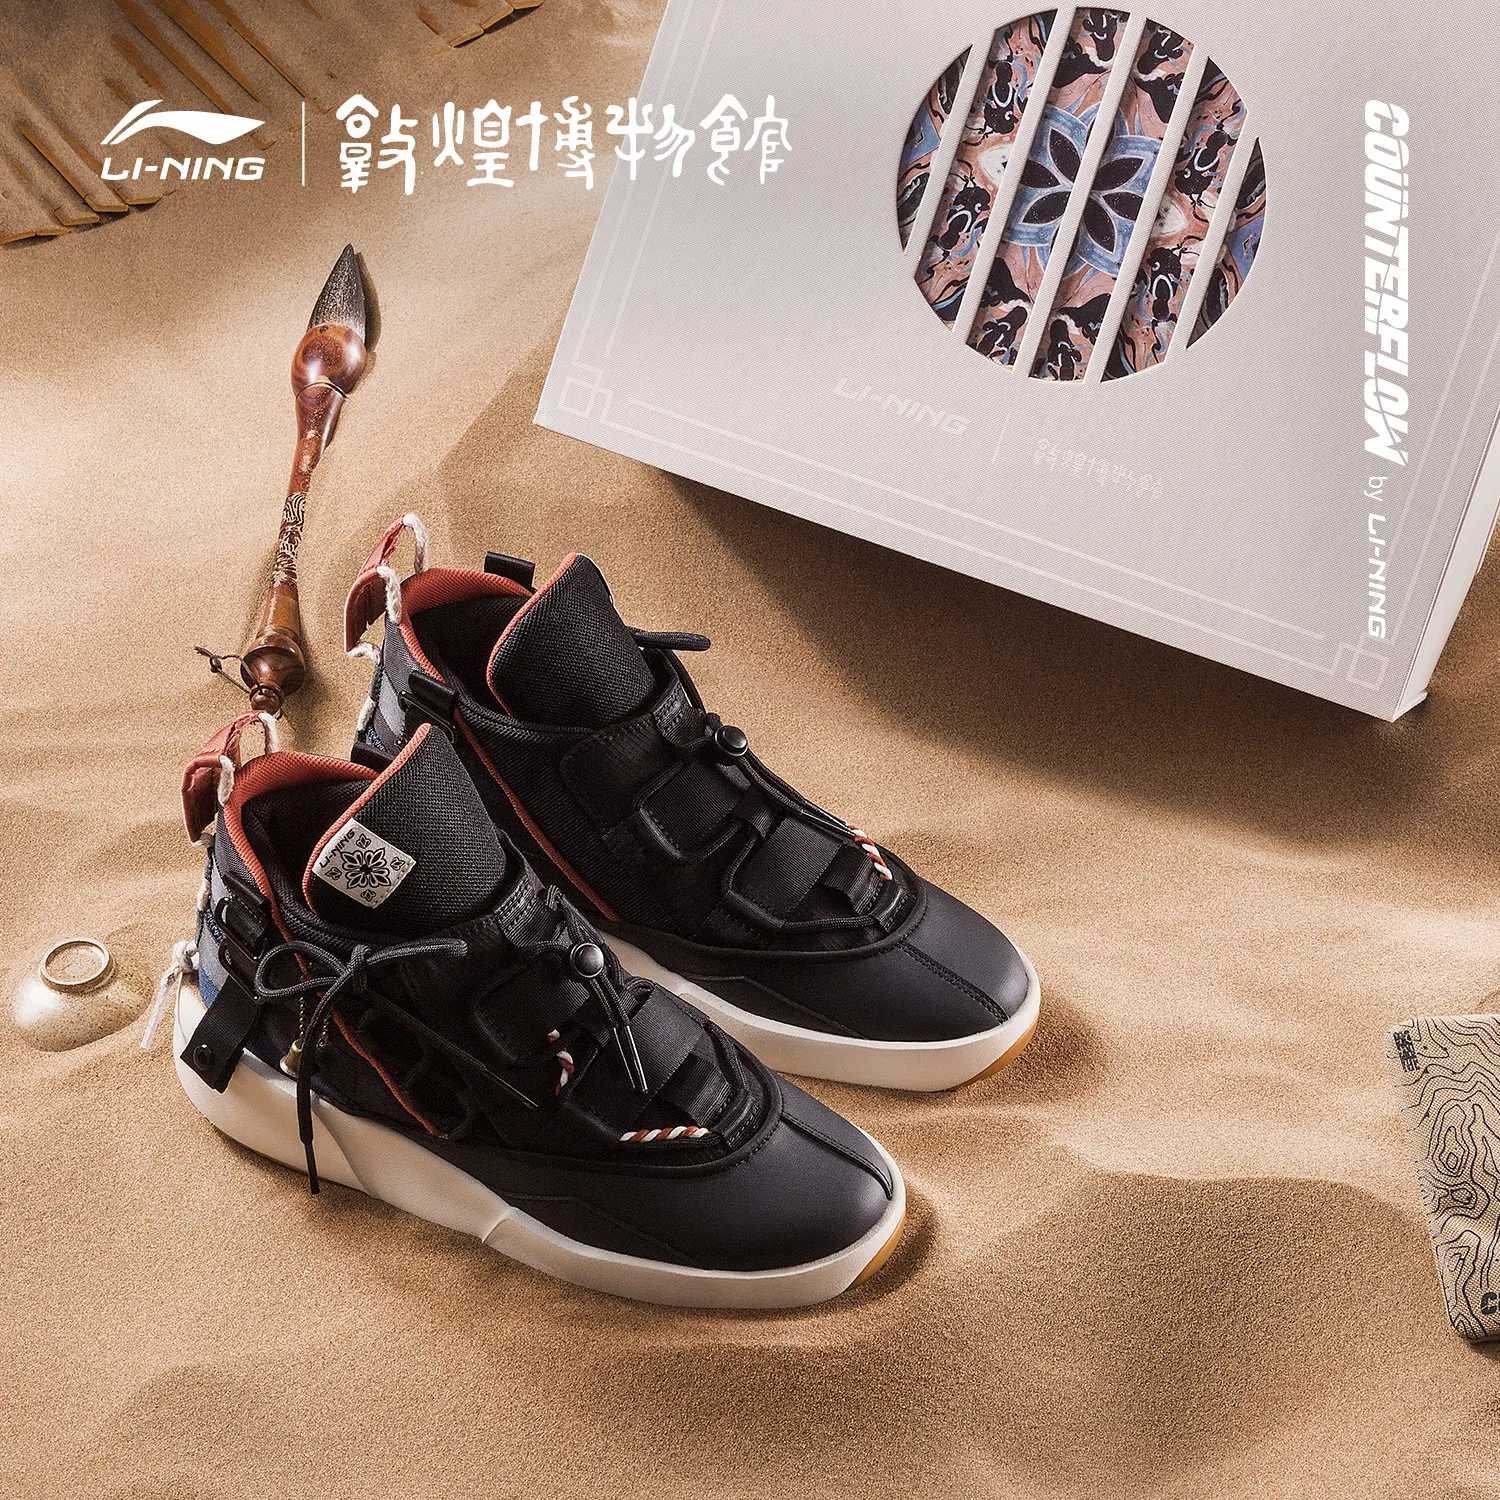 Китайские кроссовки Li Ning | AliExpress